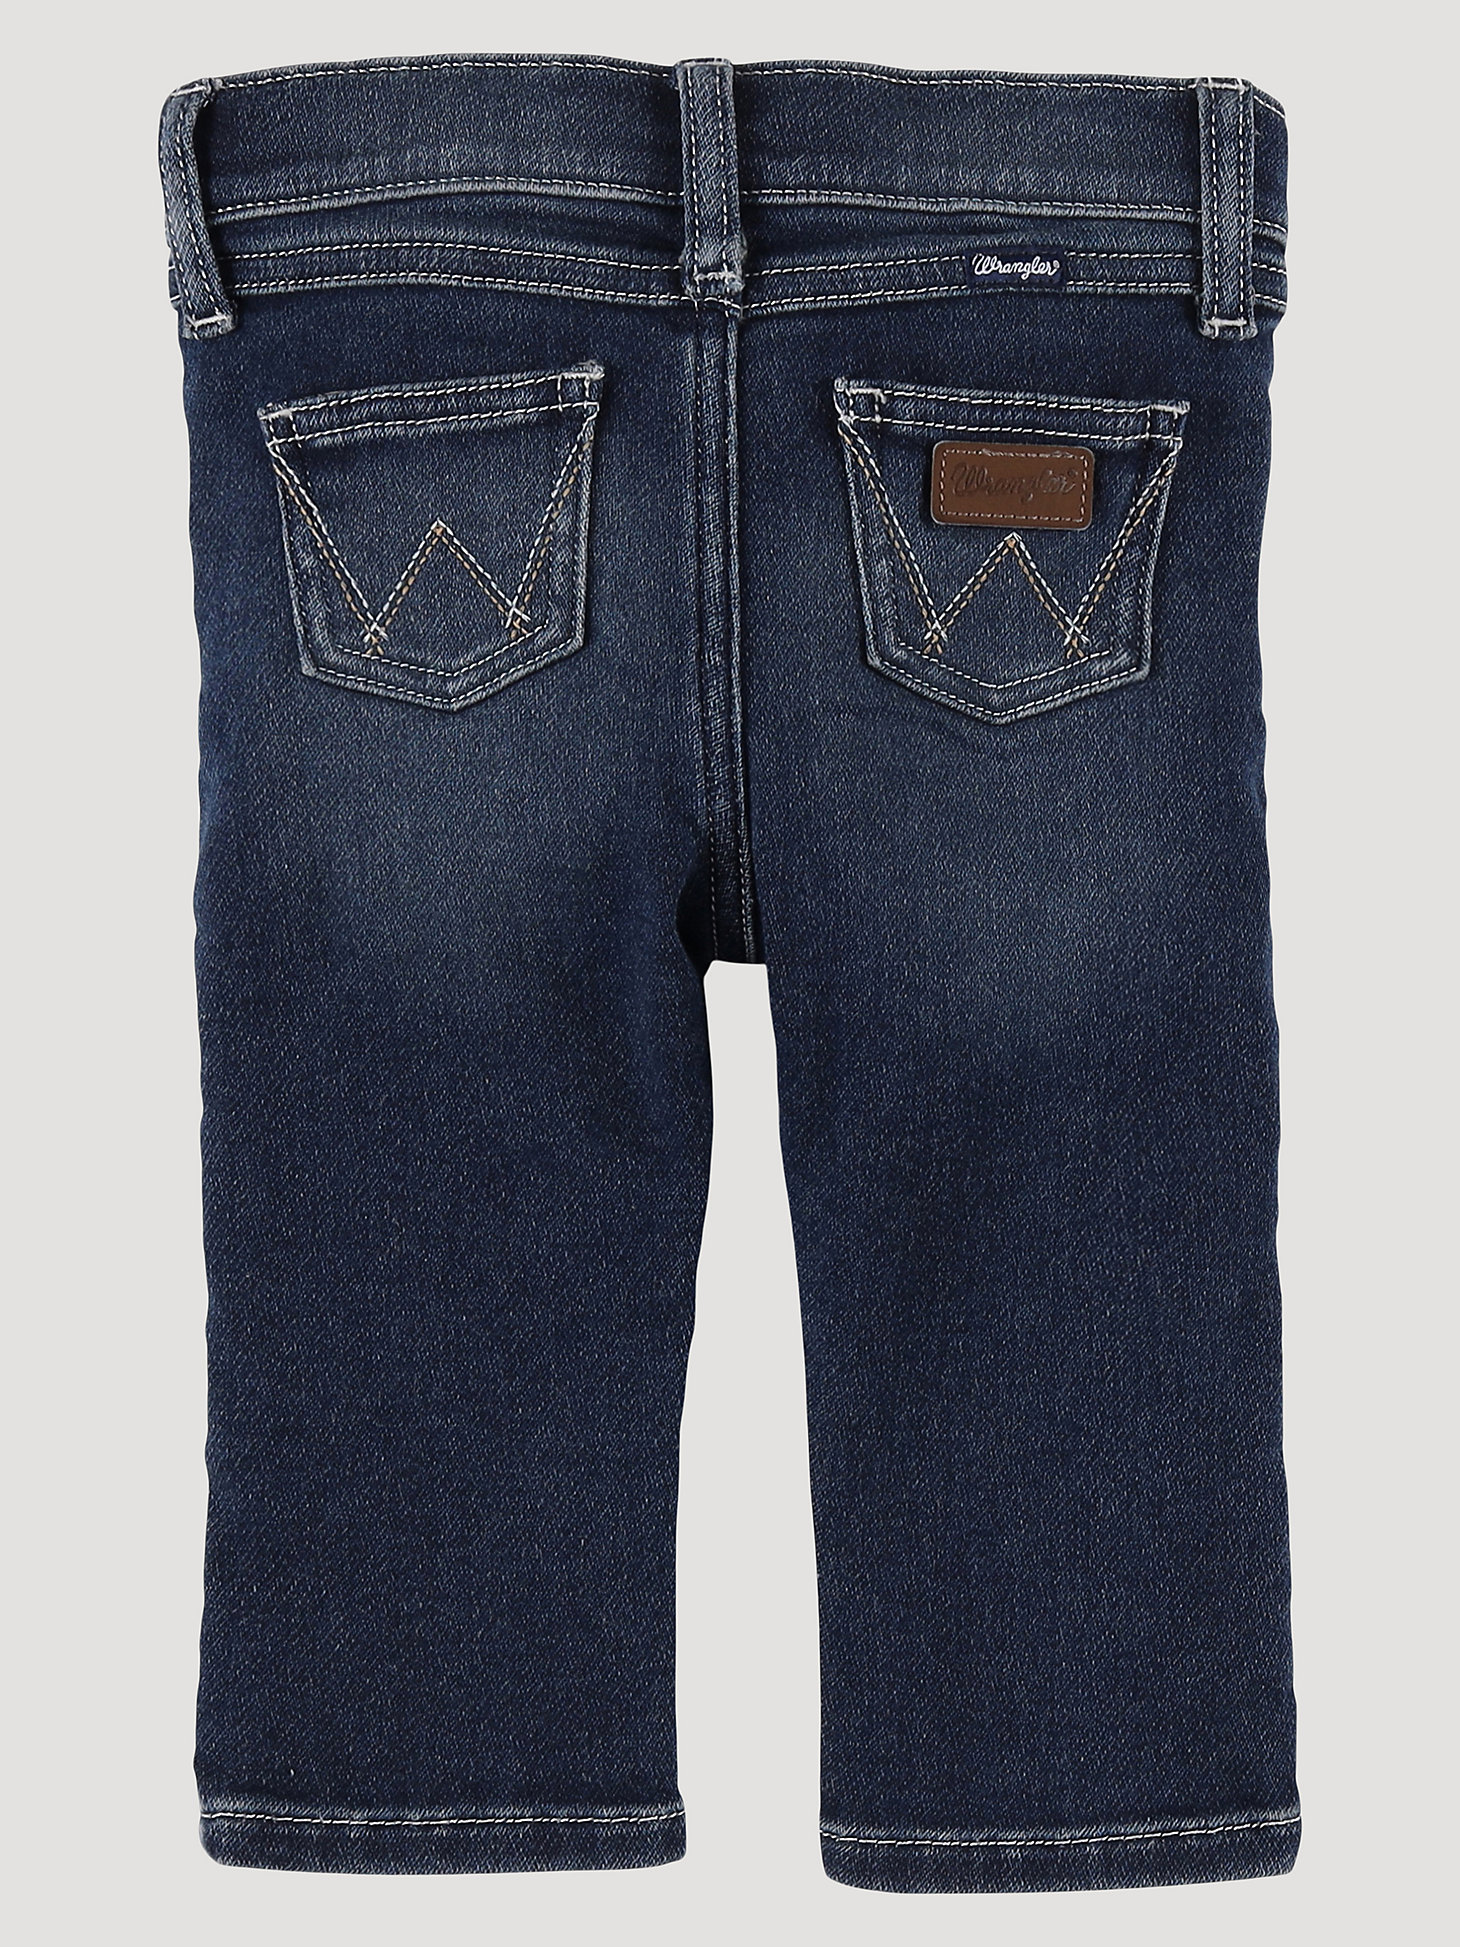 Little Boy's Stitched Pocket Bootcut Jean in Denim alternative view 1